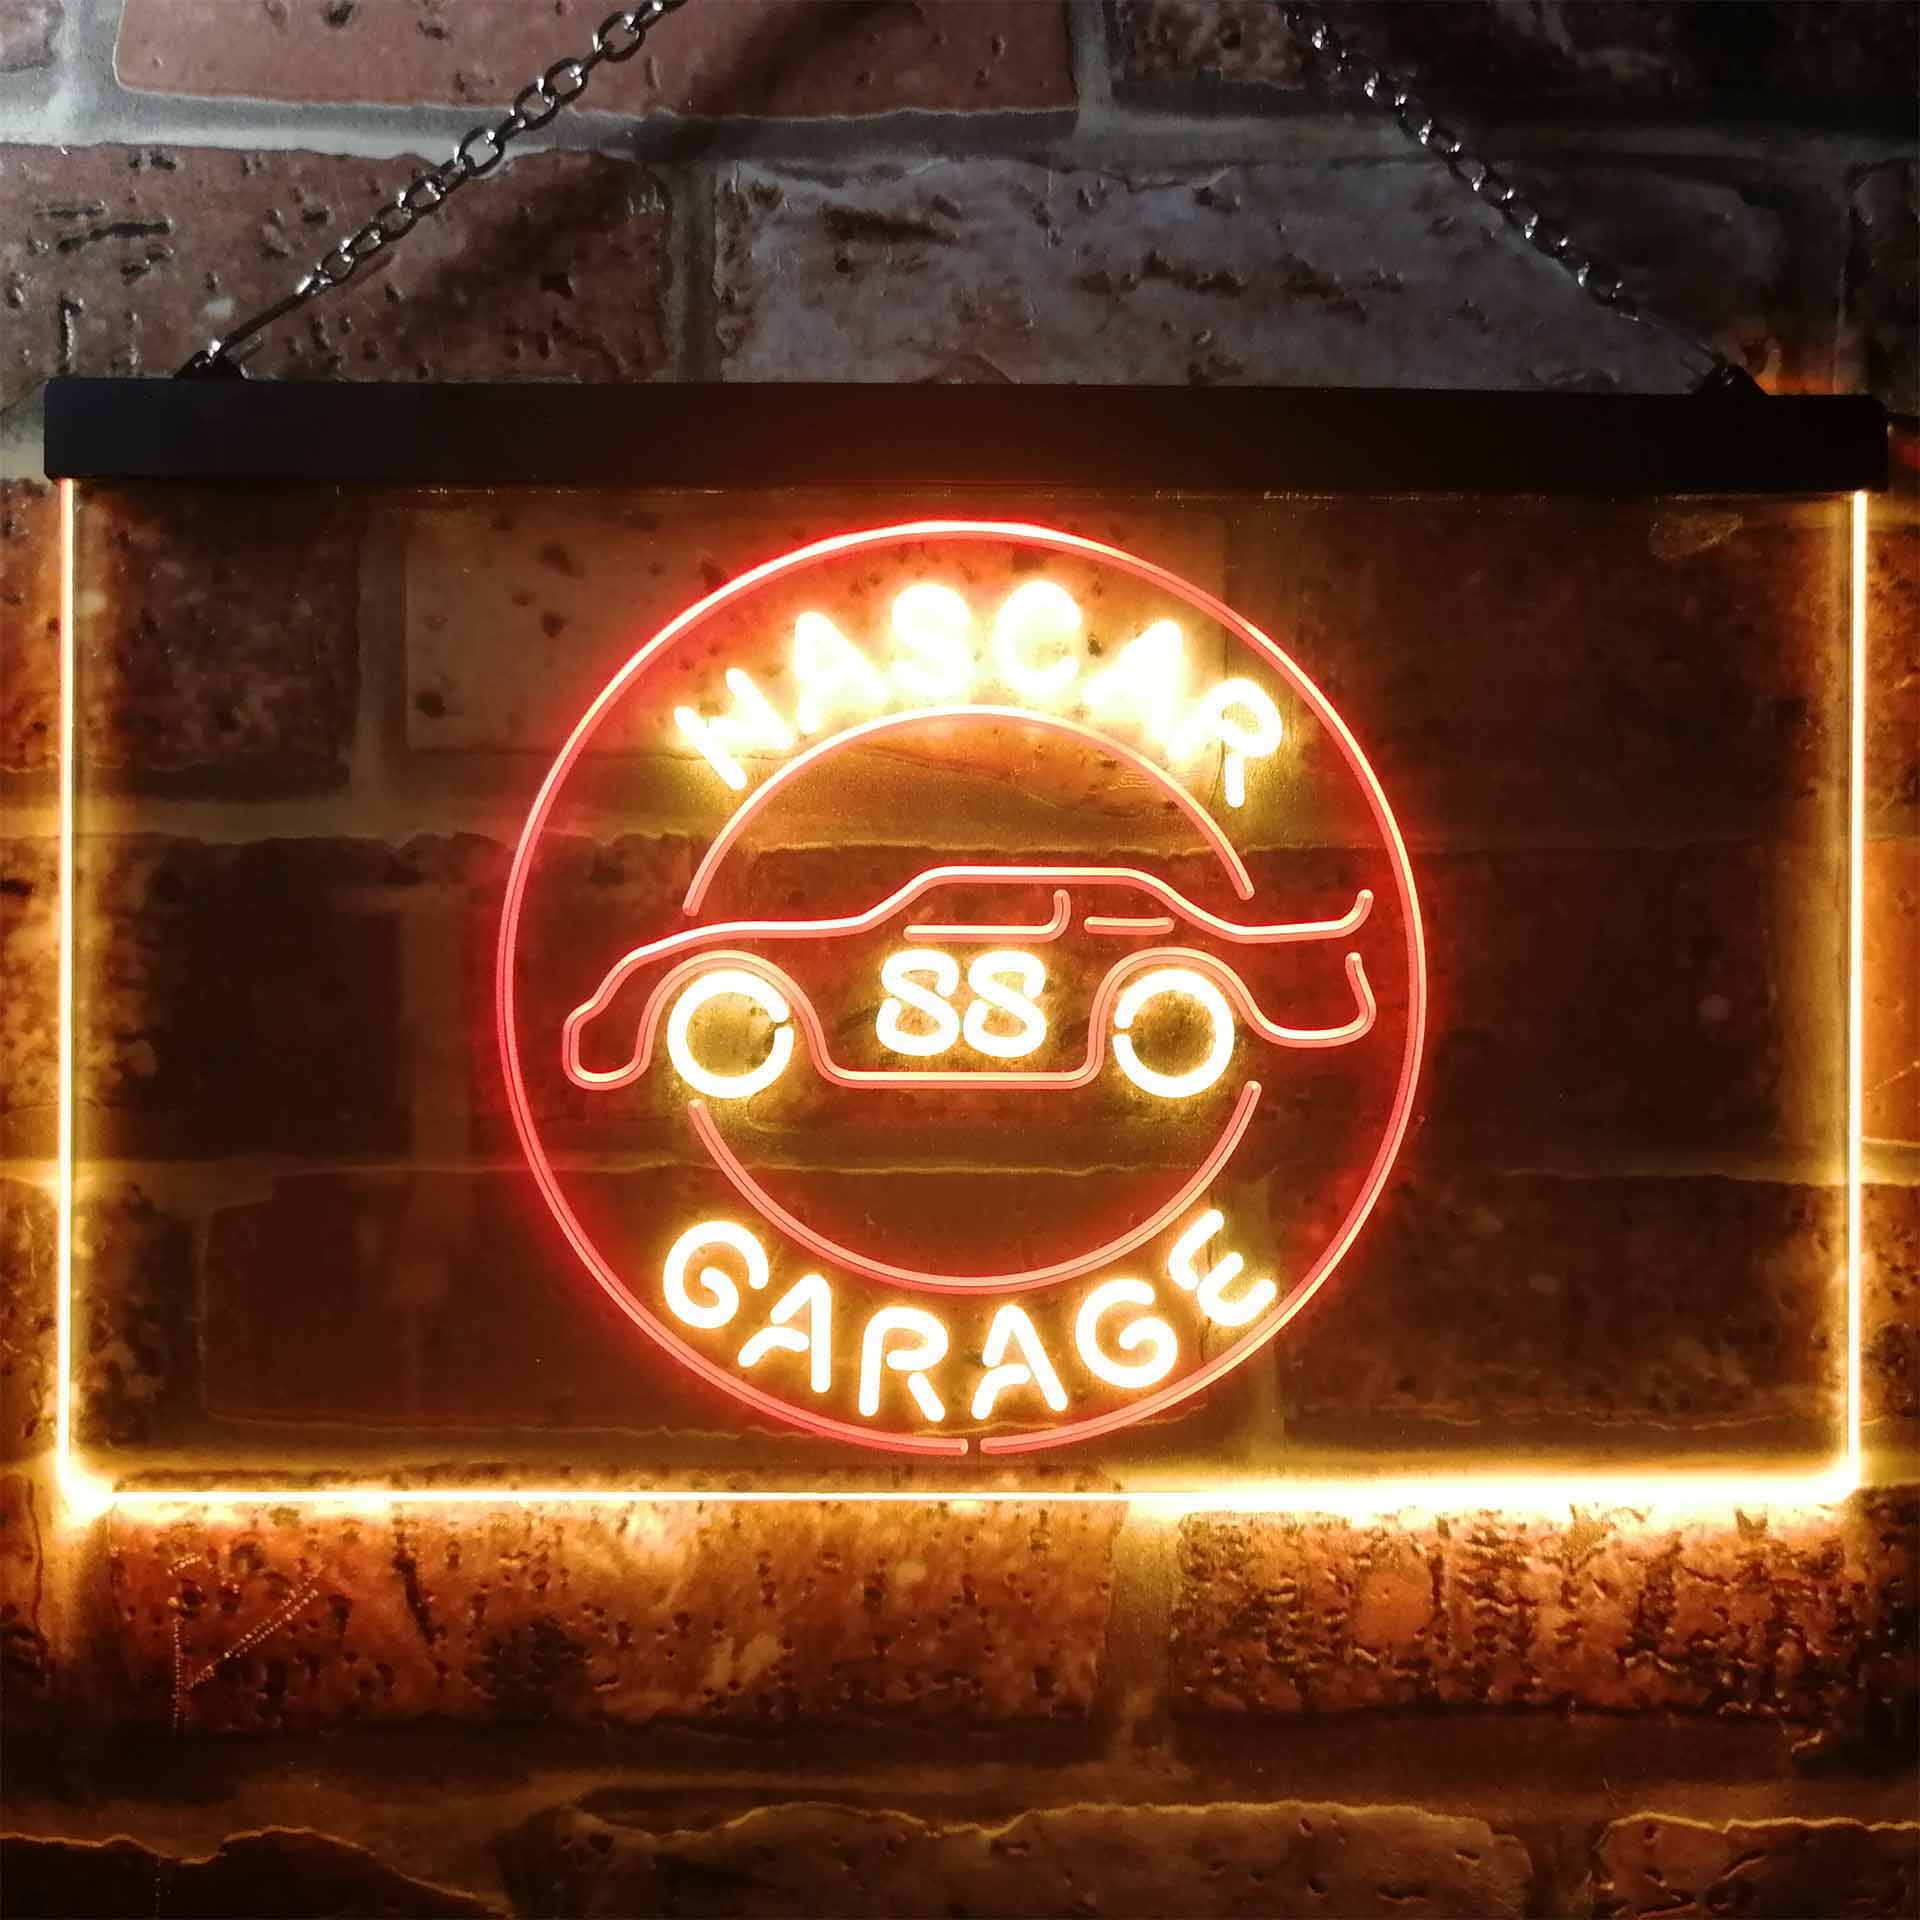 Nascar 88 Garage Dale Jr. League Club LED Neon Sign